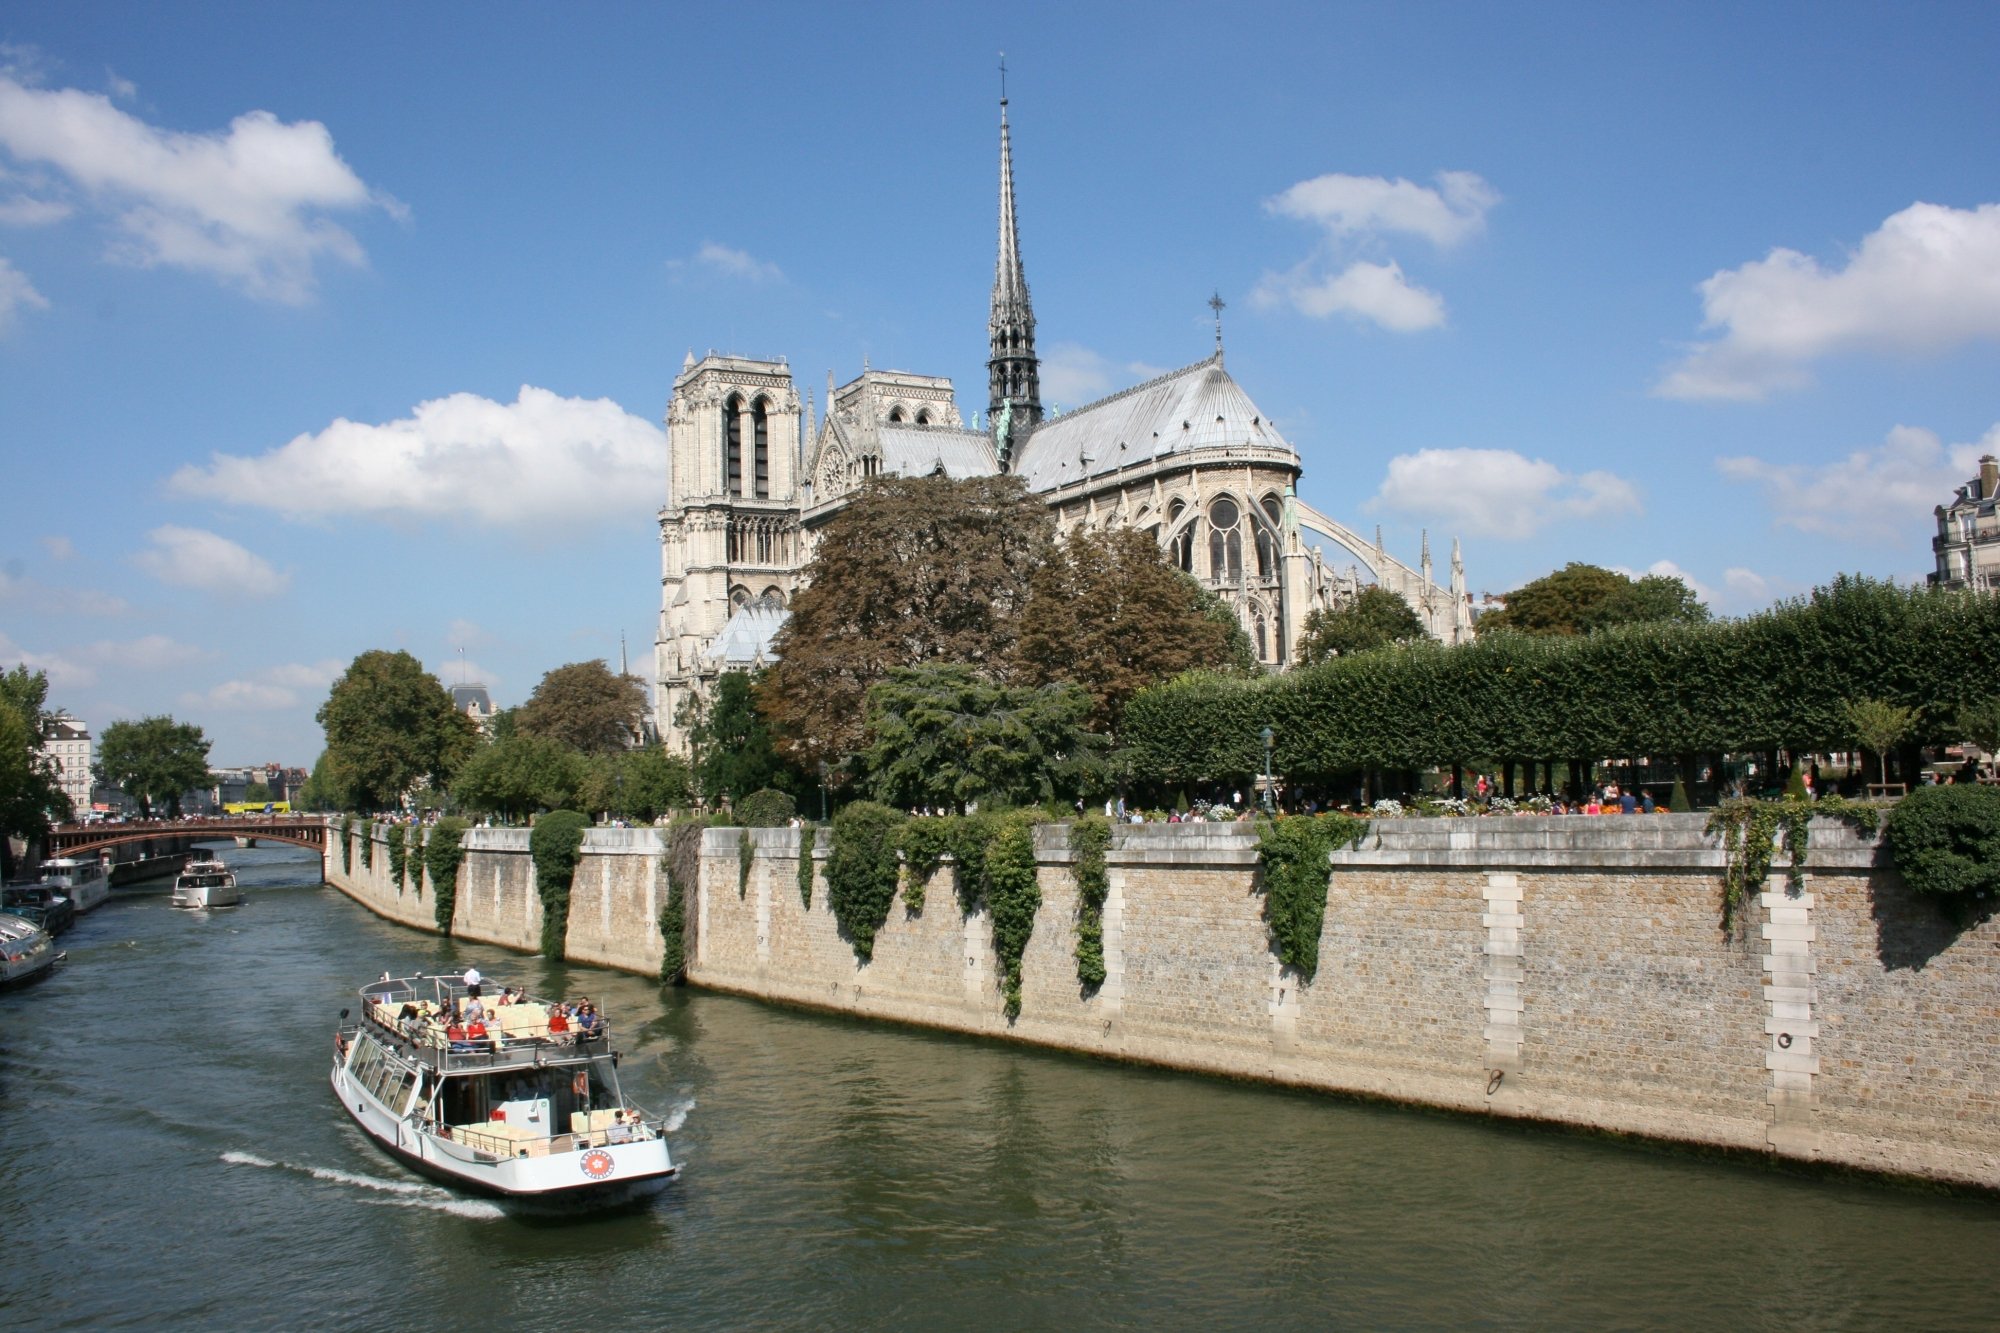 520/Photos_Paris/boat-chateau-palace-paris-river-canal-929085-pxhere_com.jpg